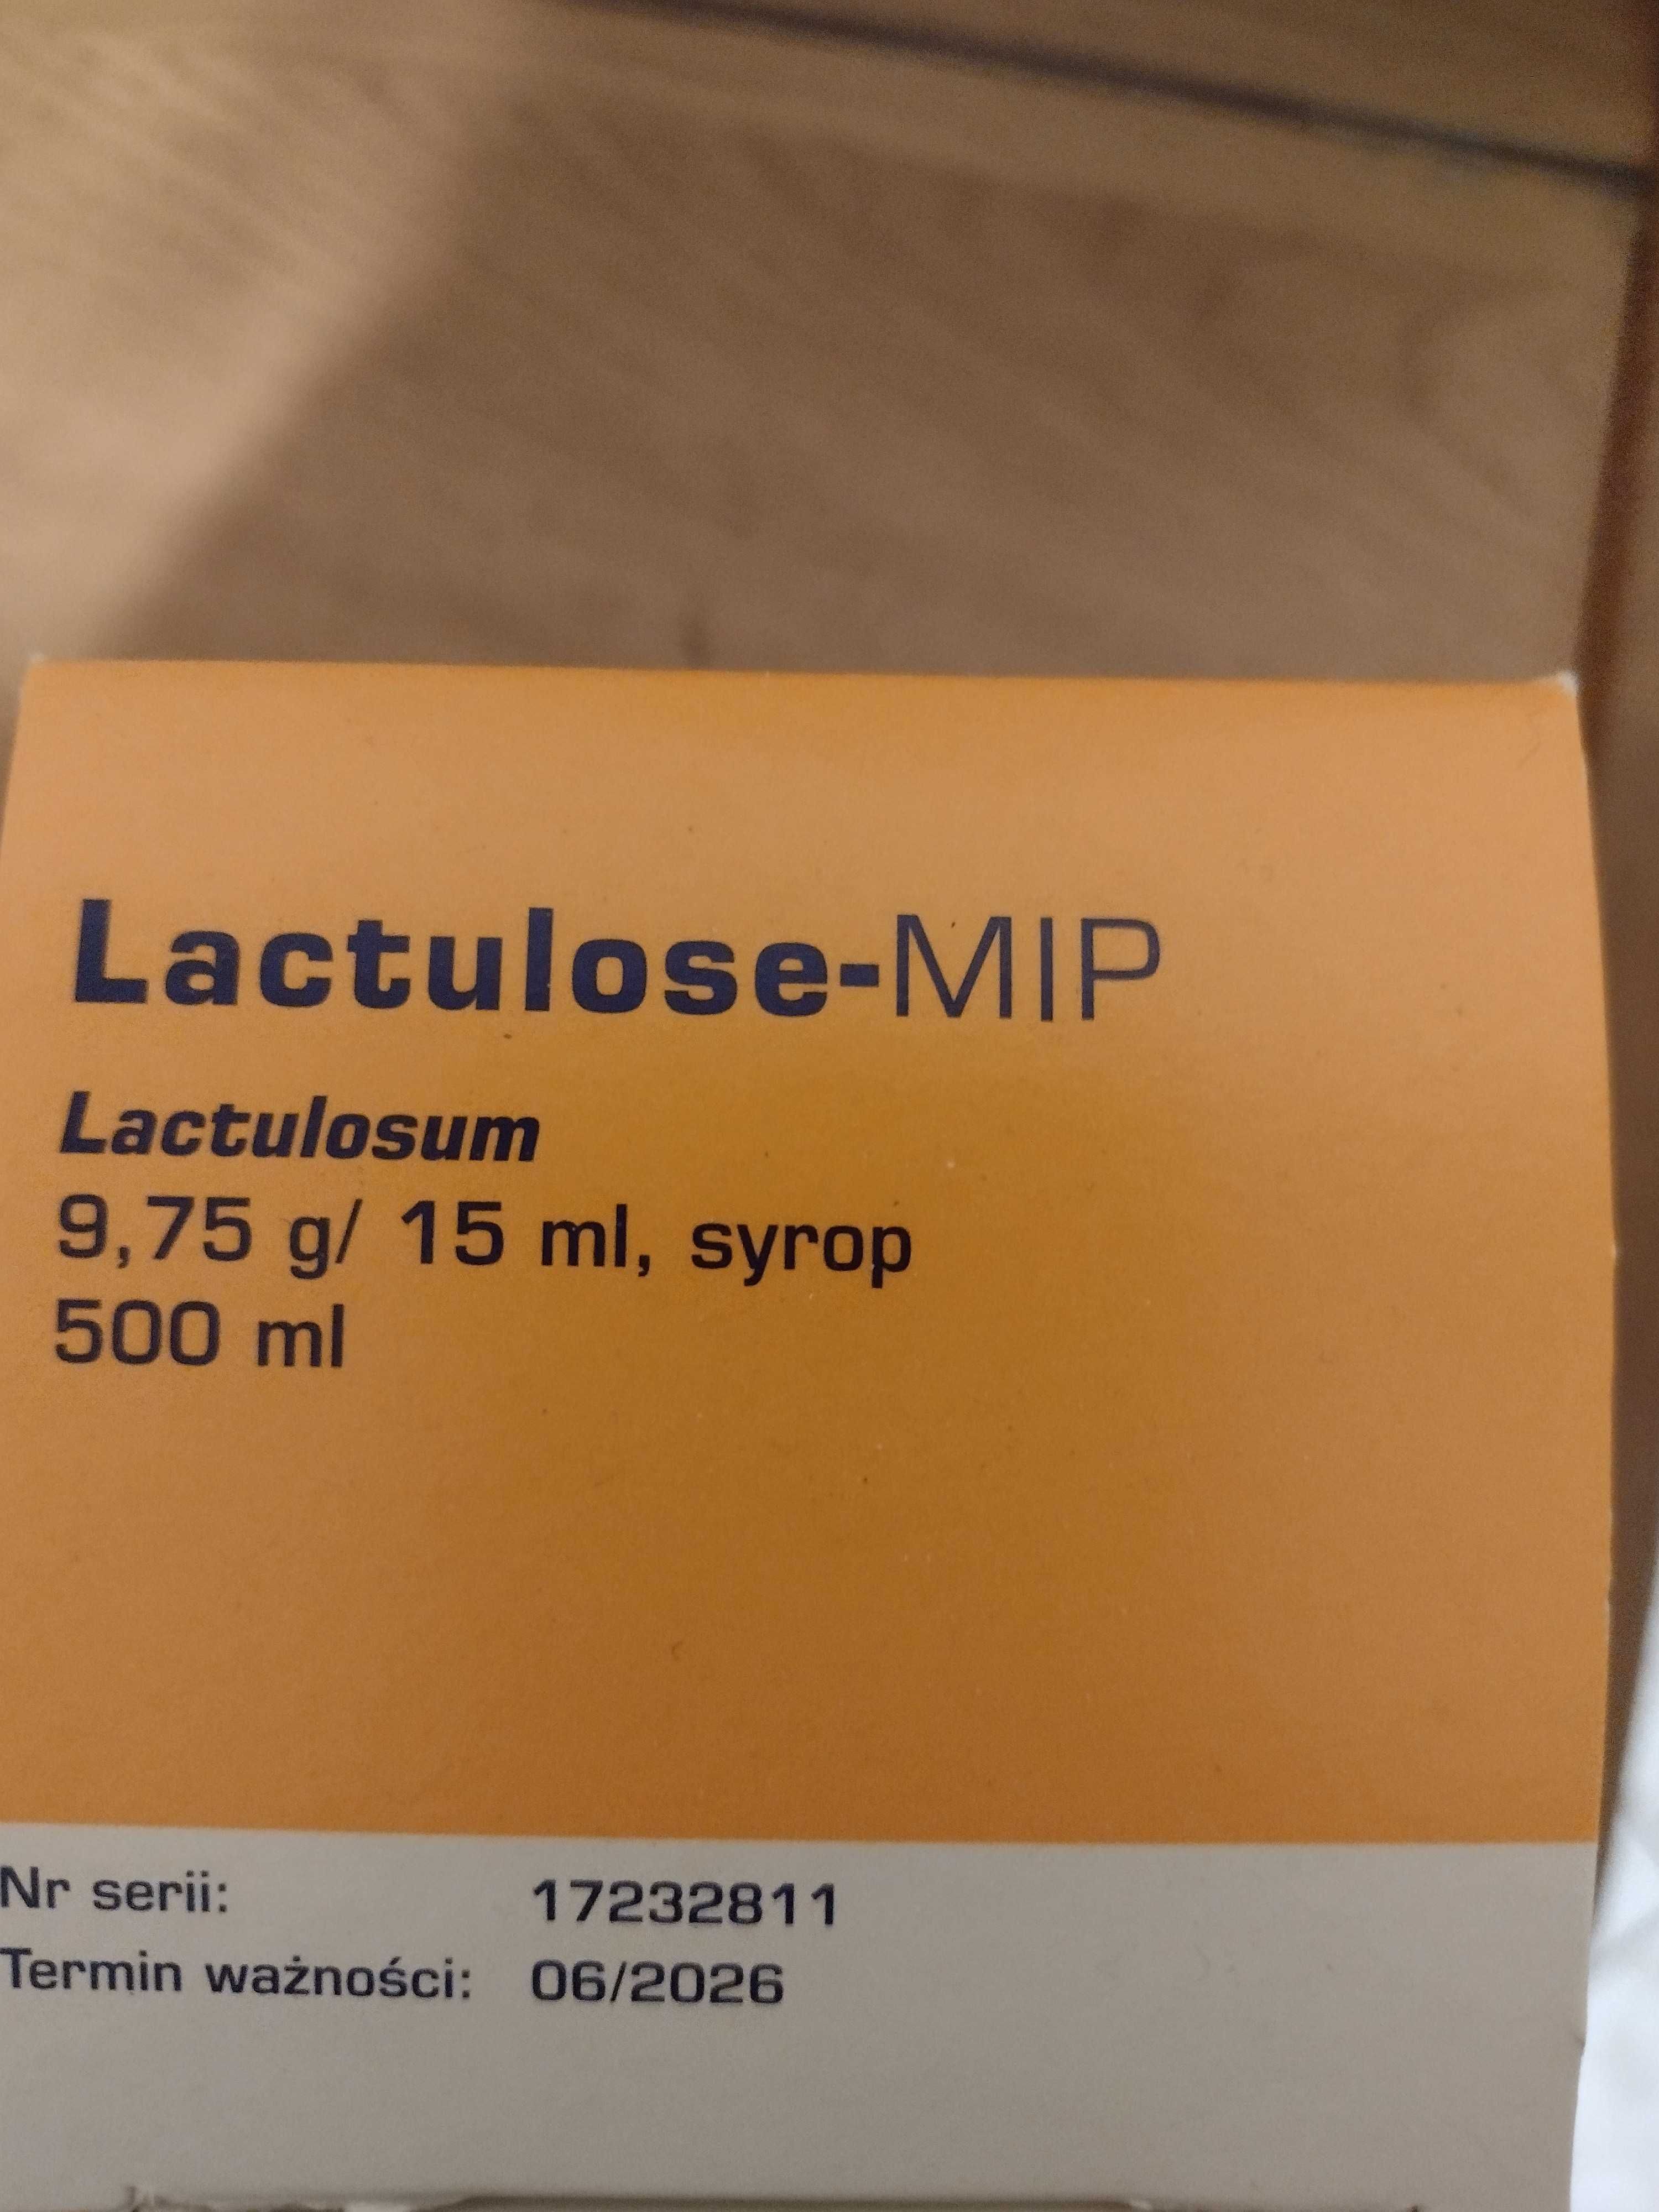 sprzedam syrop polecany przy zaparciach Lactulose-MIP -dla dorosłych